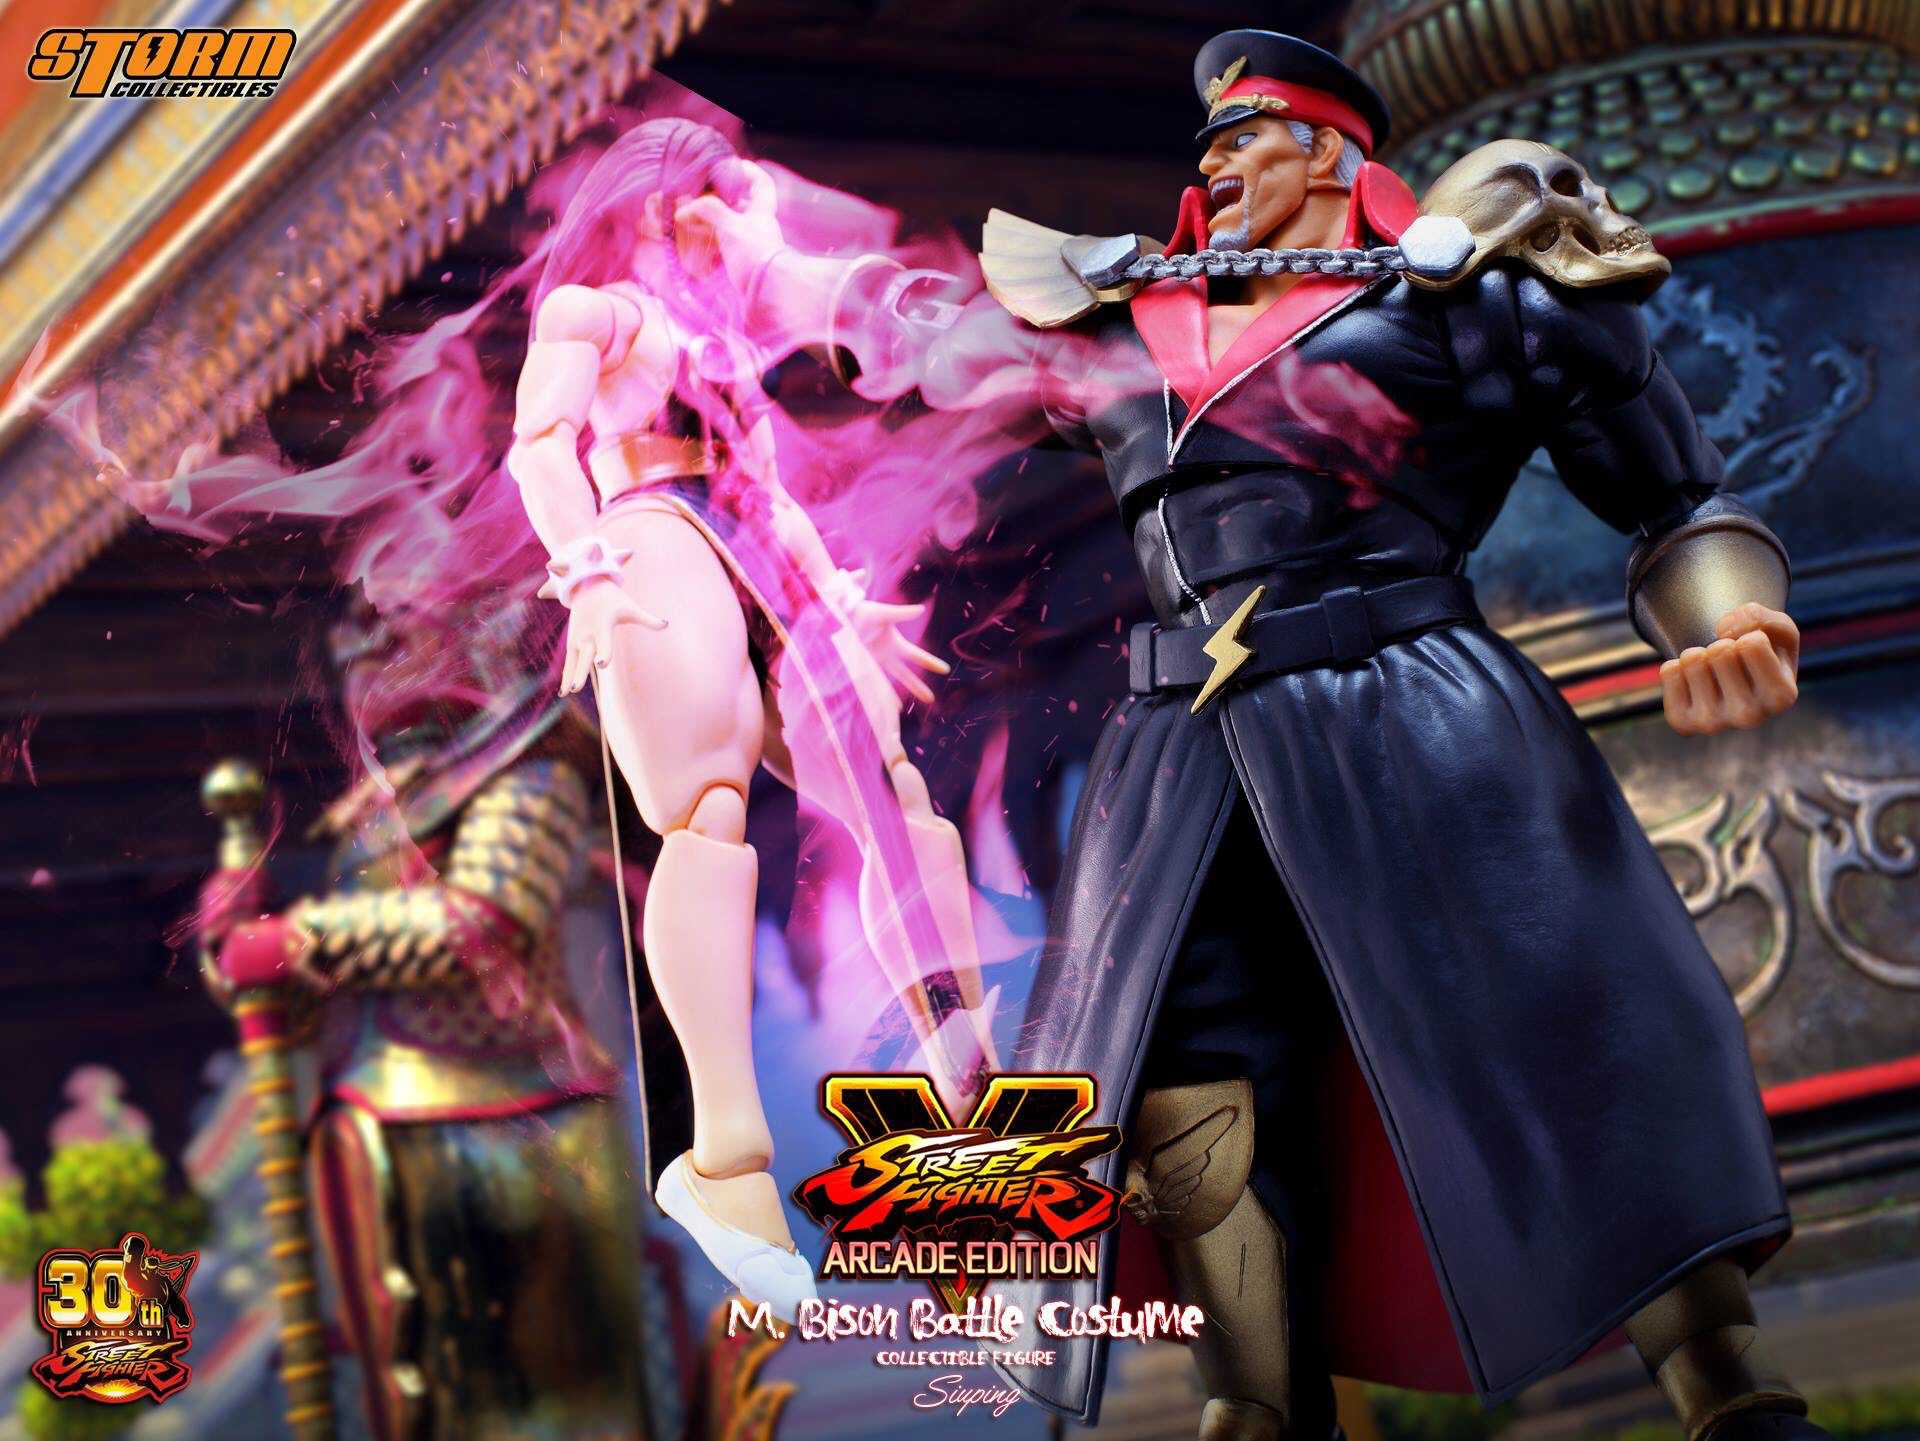 Street Fighter V - M. Bison Battle Costume.